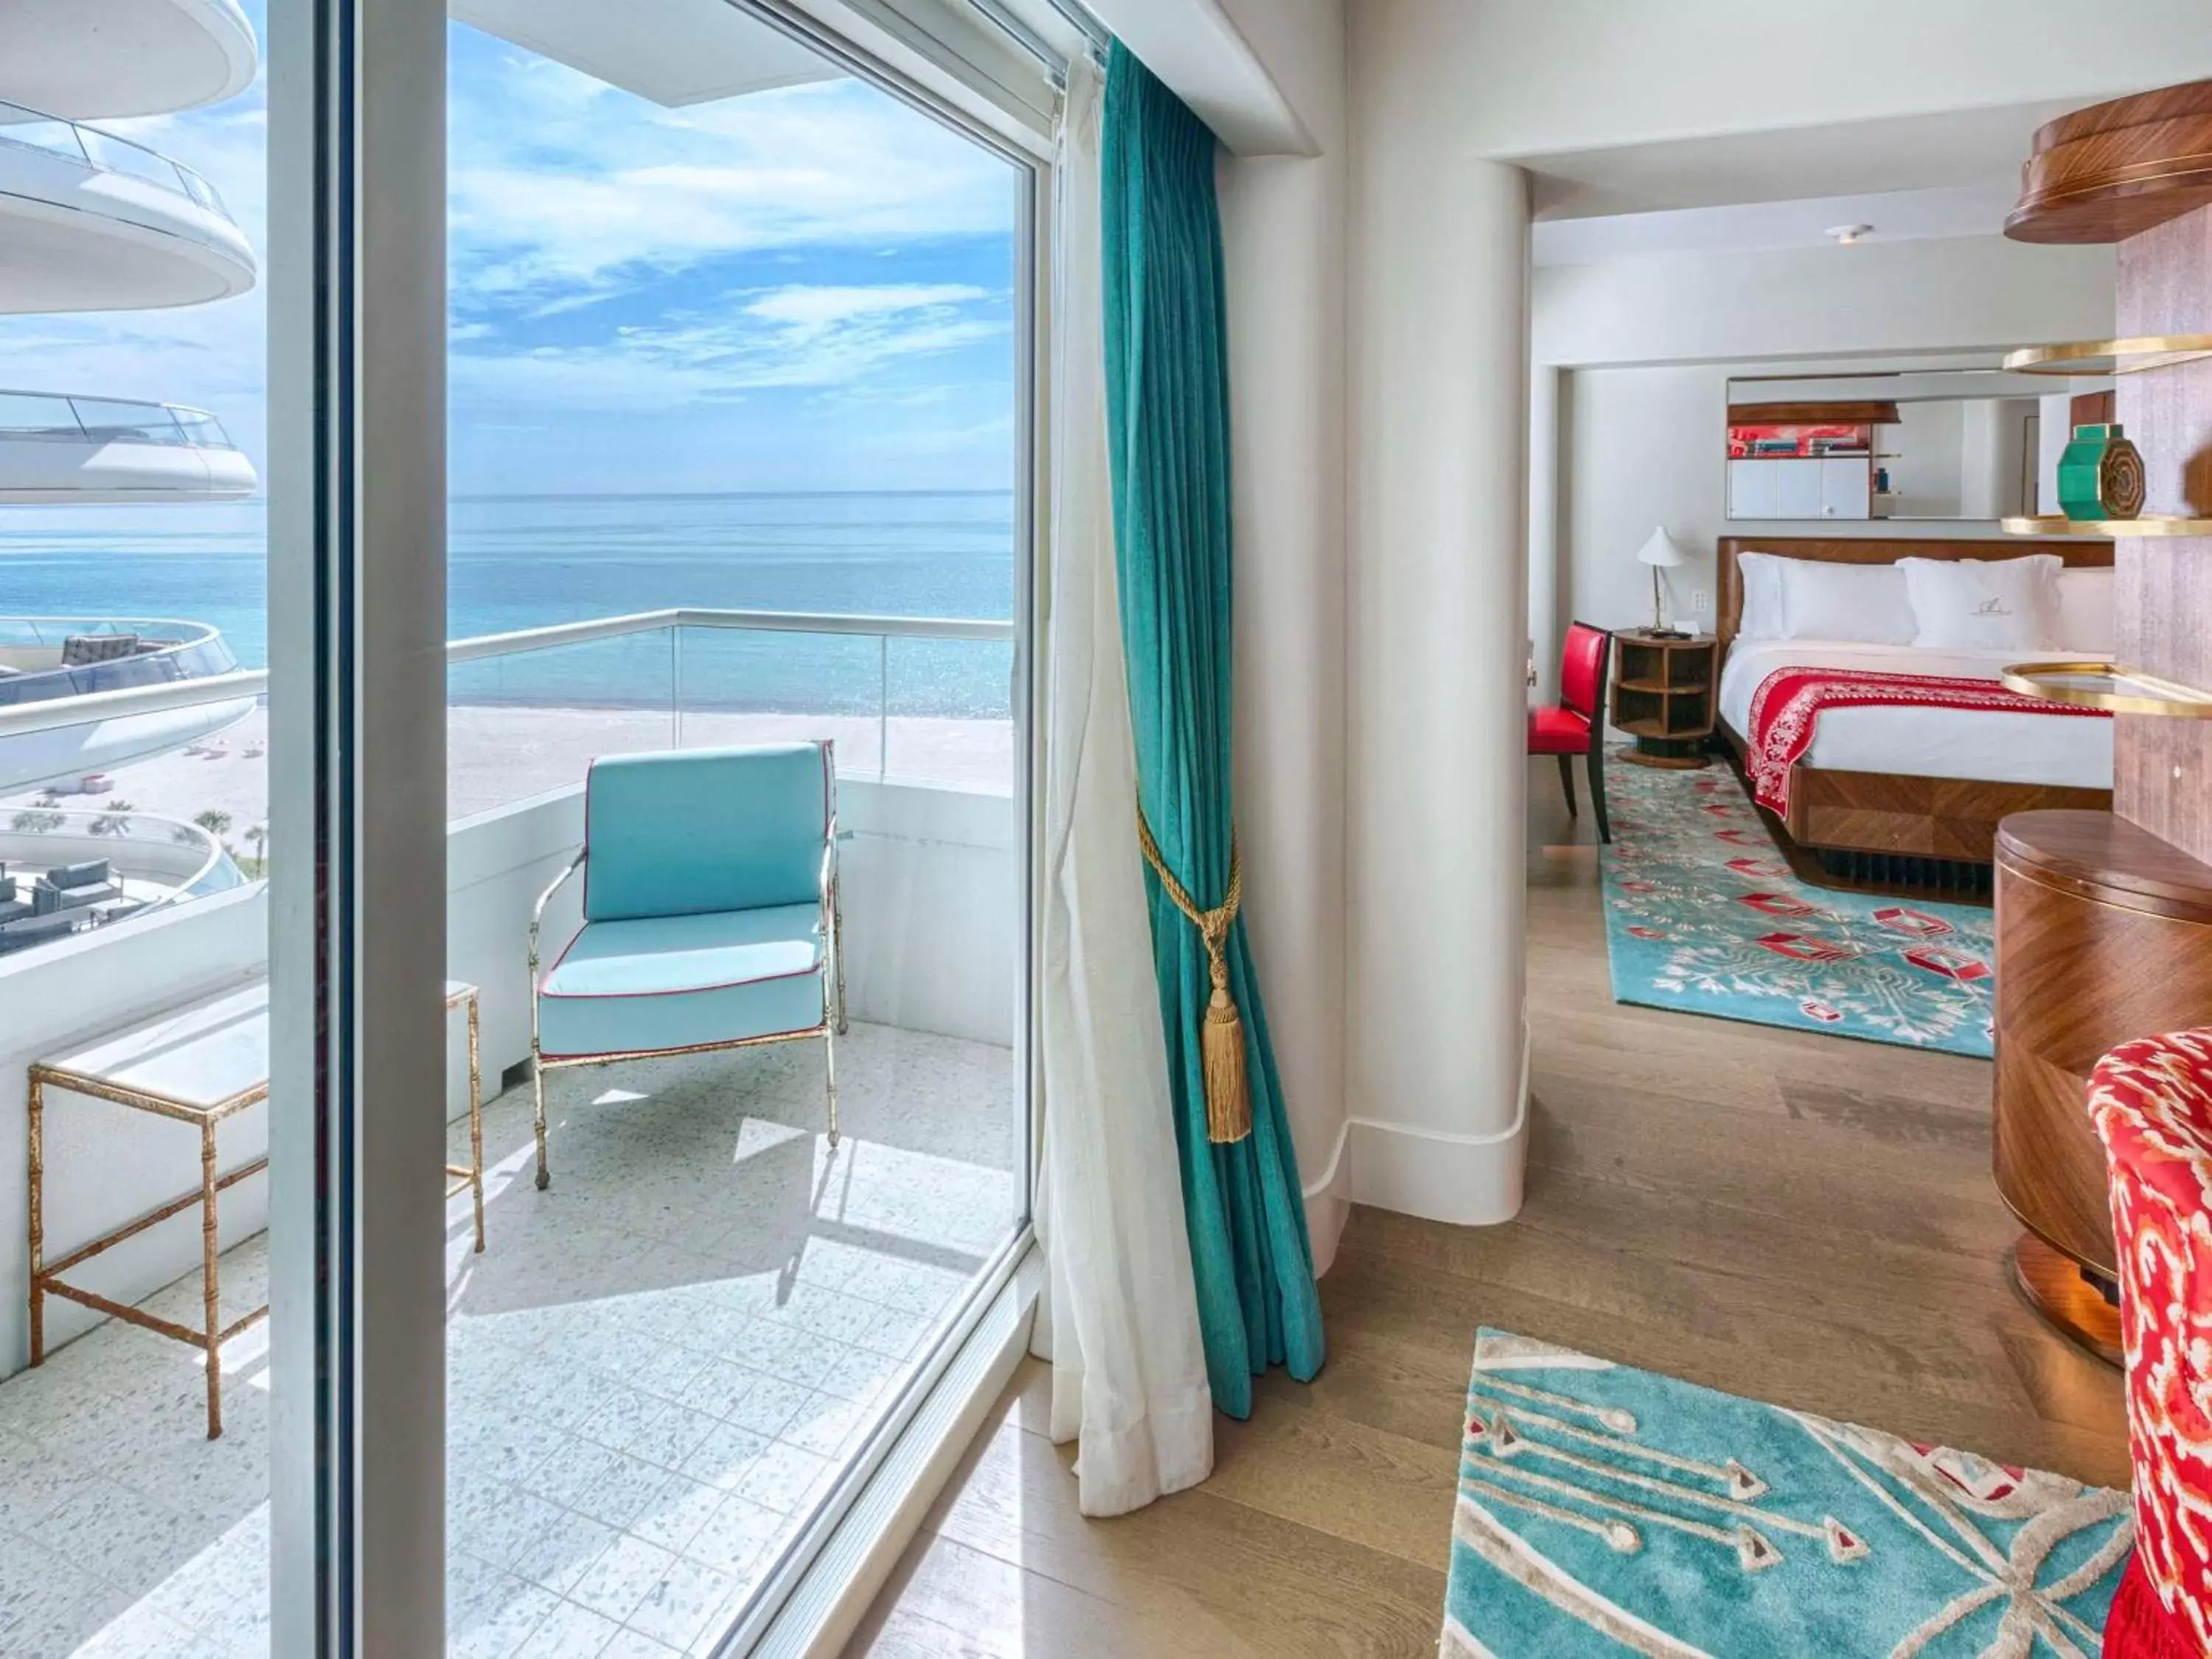 Bedroom in Faena Hotel Miami Beach